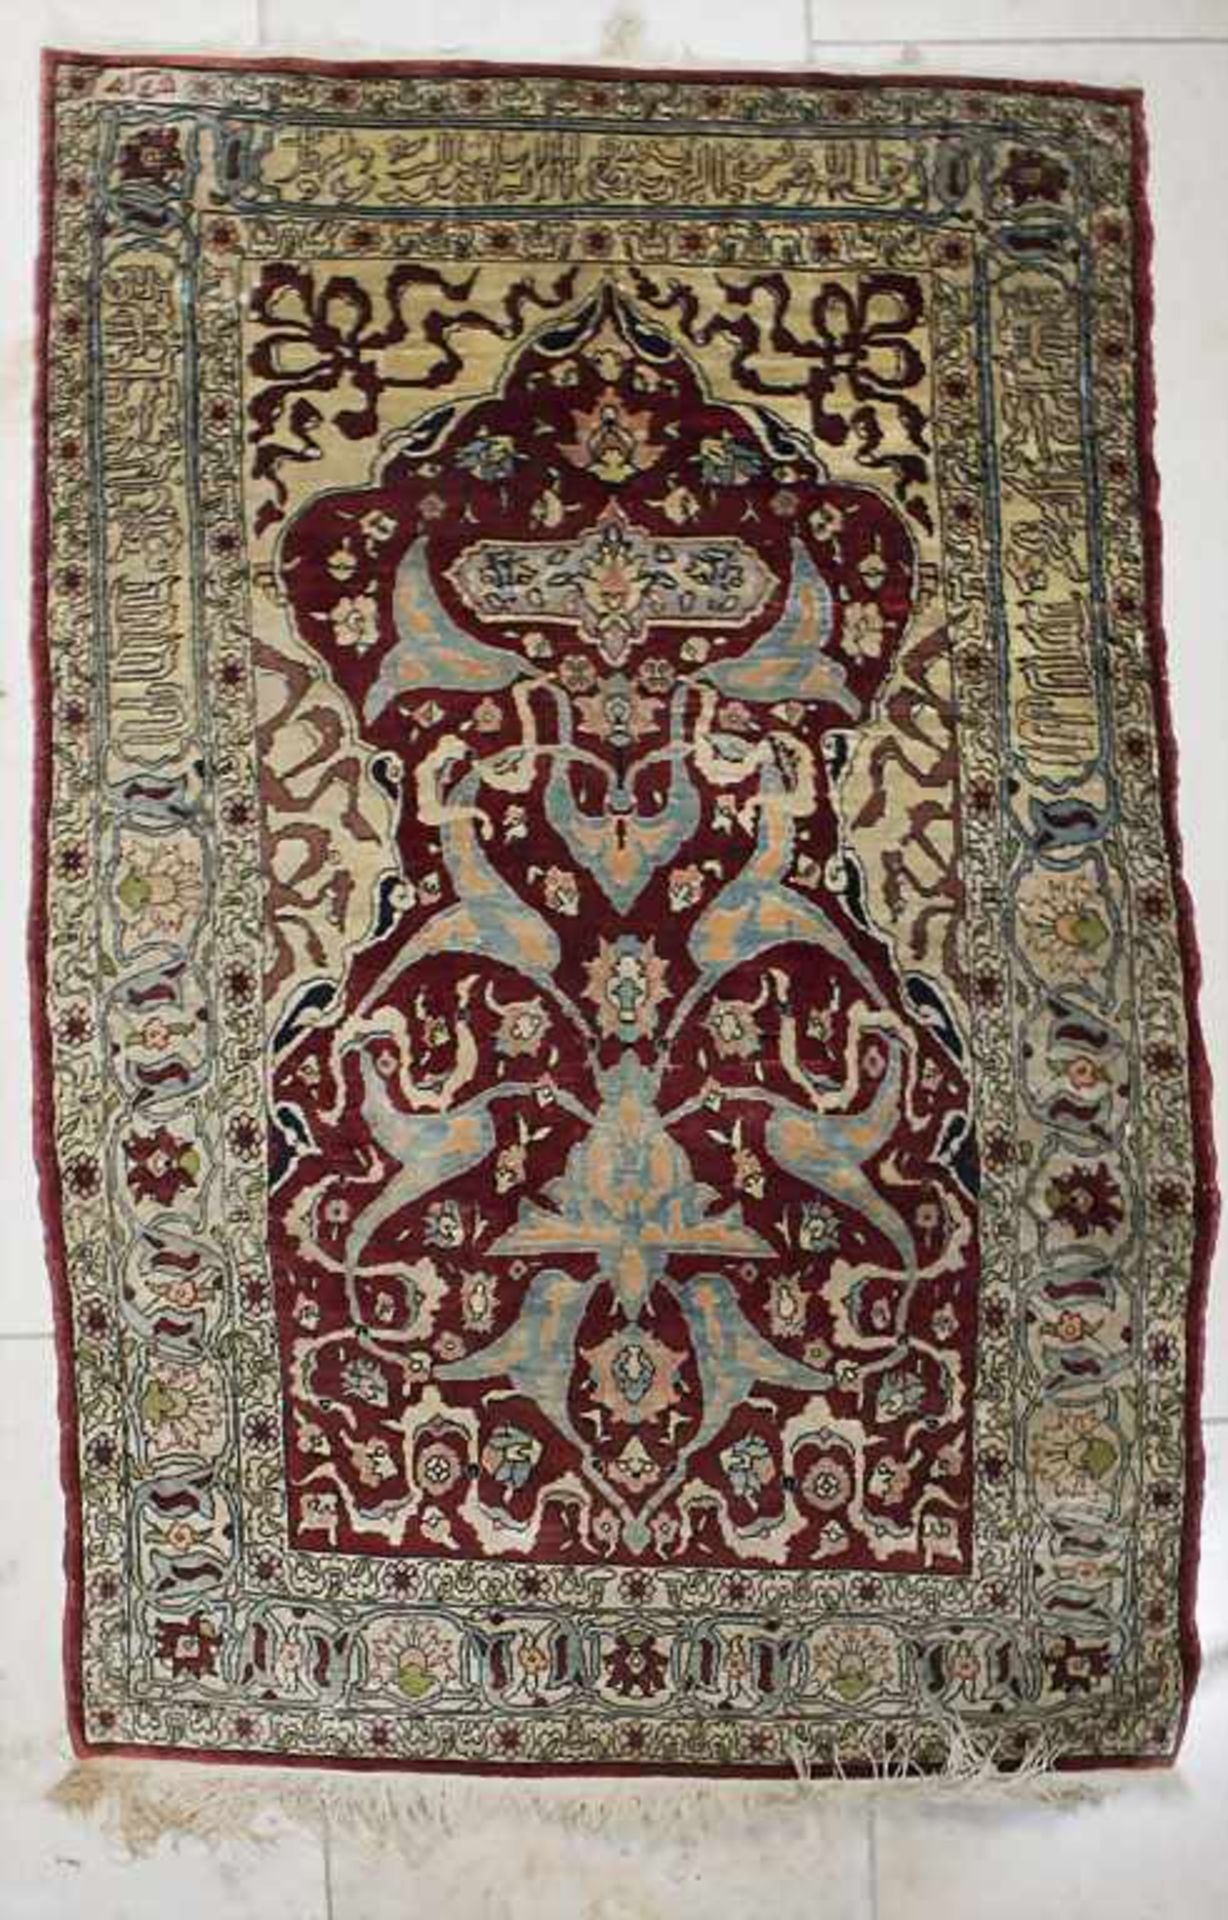 Seidenteppich 'Hereke' mit arabischer Schrift / A silk carpet 'Hereke' with arabic